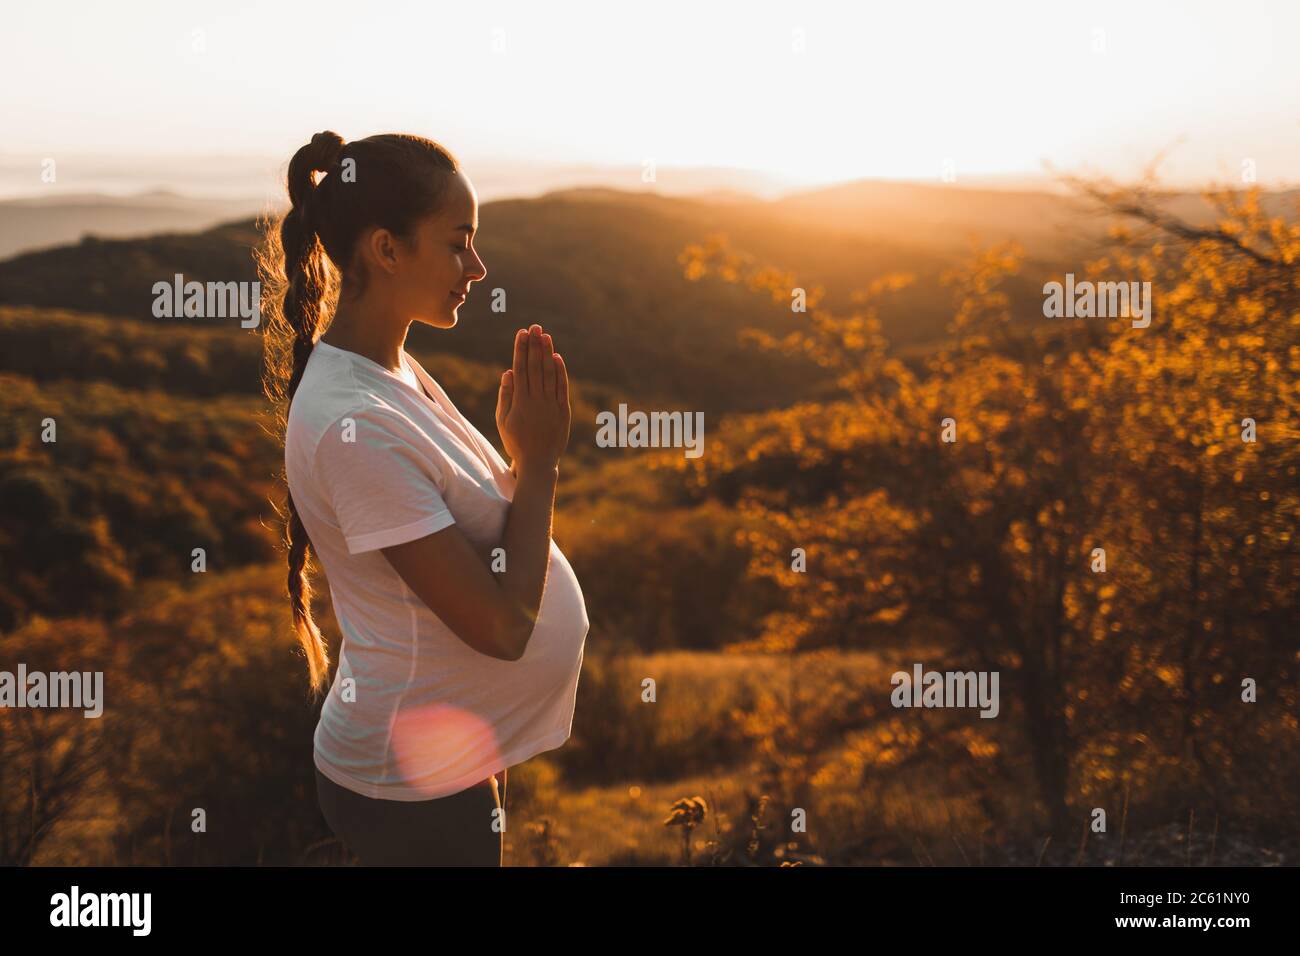 Spirituelles und emotionales Konzept der Harmonie mit der Natur in der Mutterschaft. Schwangere Frau, die Yoga im Freien auf dem Hügel bei Sonnenuntergang praktiziert. Toller Ausblick auf die Berge im Herbst. Stockfoto